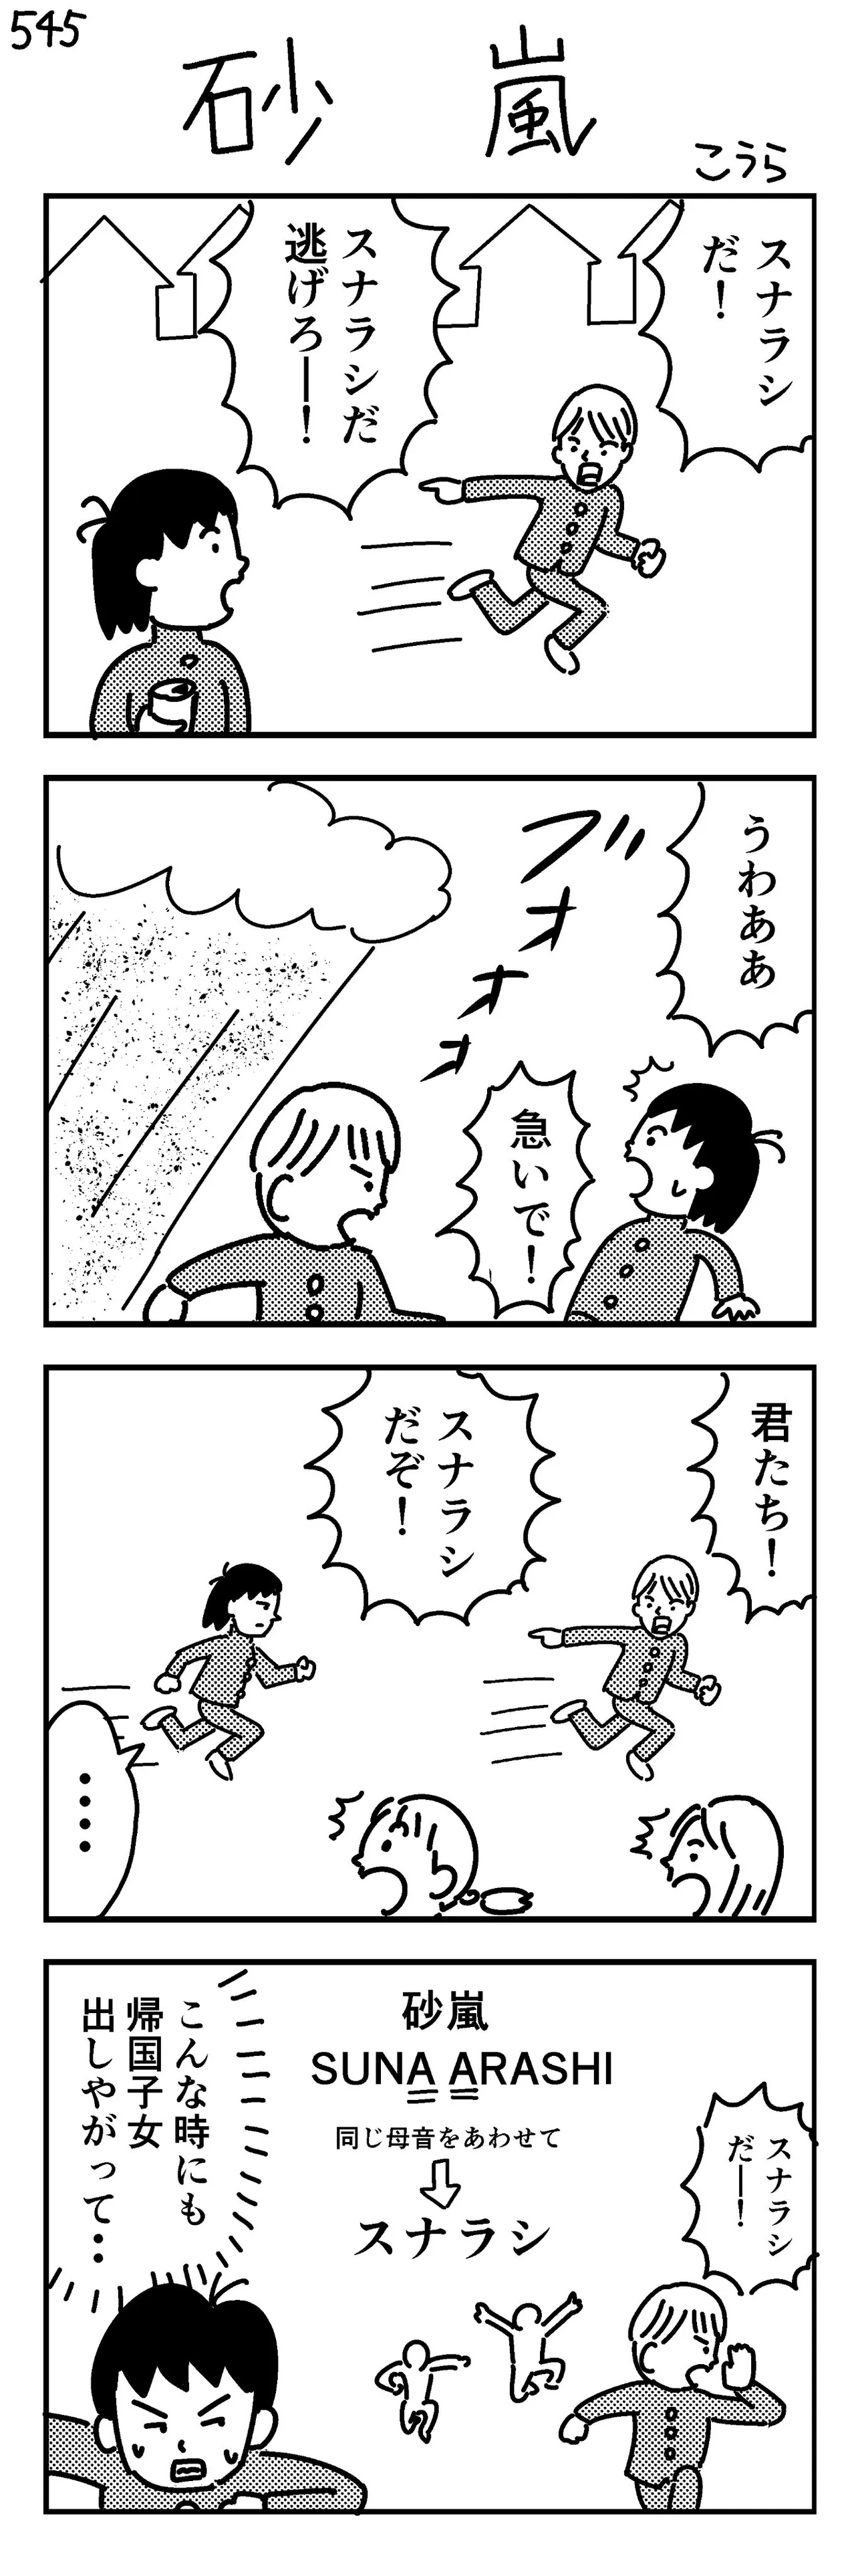 『砂嵐(545)』